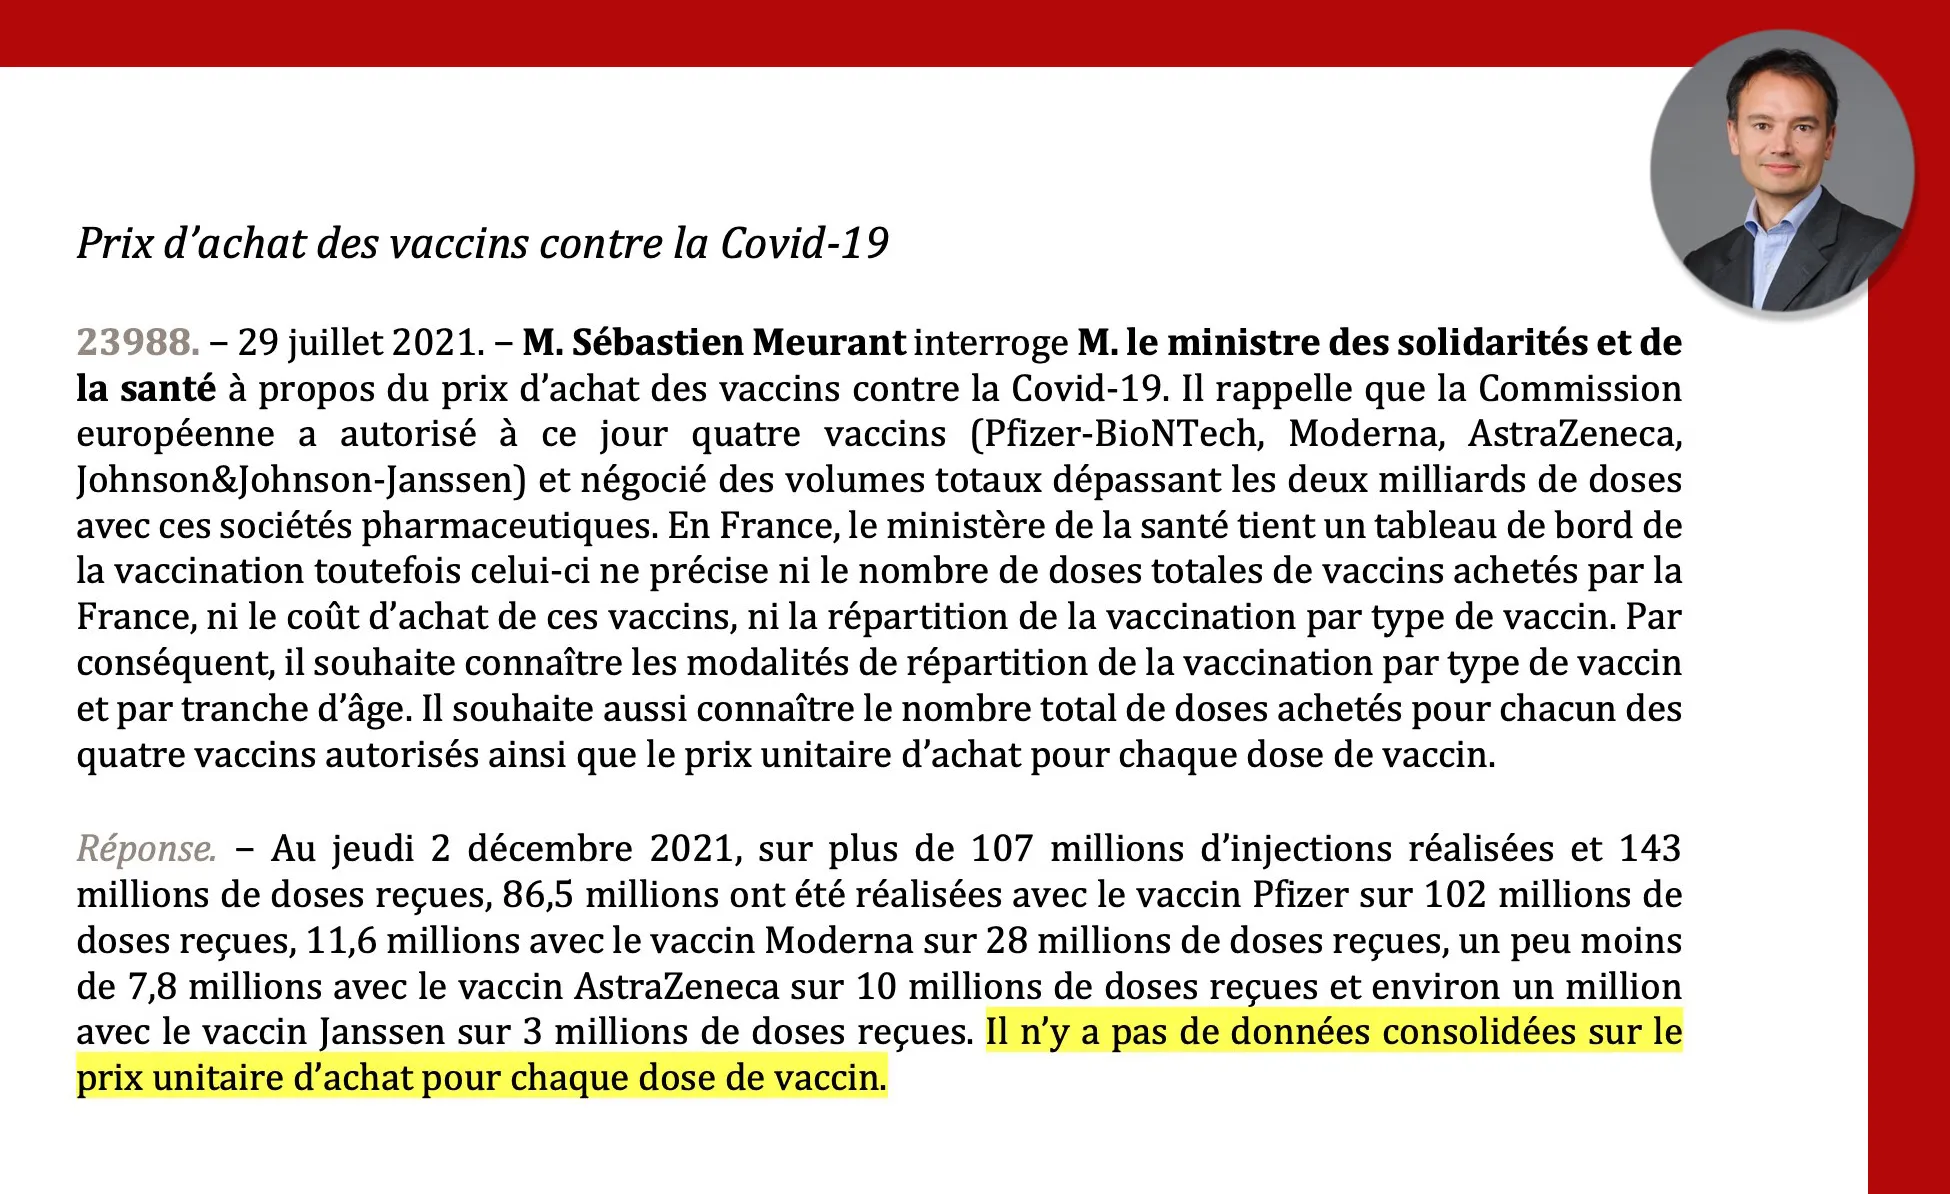 Un Sénateur demande le prix unitaire des vaccins, Veran refuse de répondre arguant qu'&quot;il n'y a pas de données consolidées sur le prix unitaire d'achat pour chaque dose...&quot;